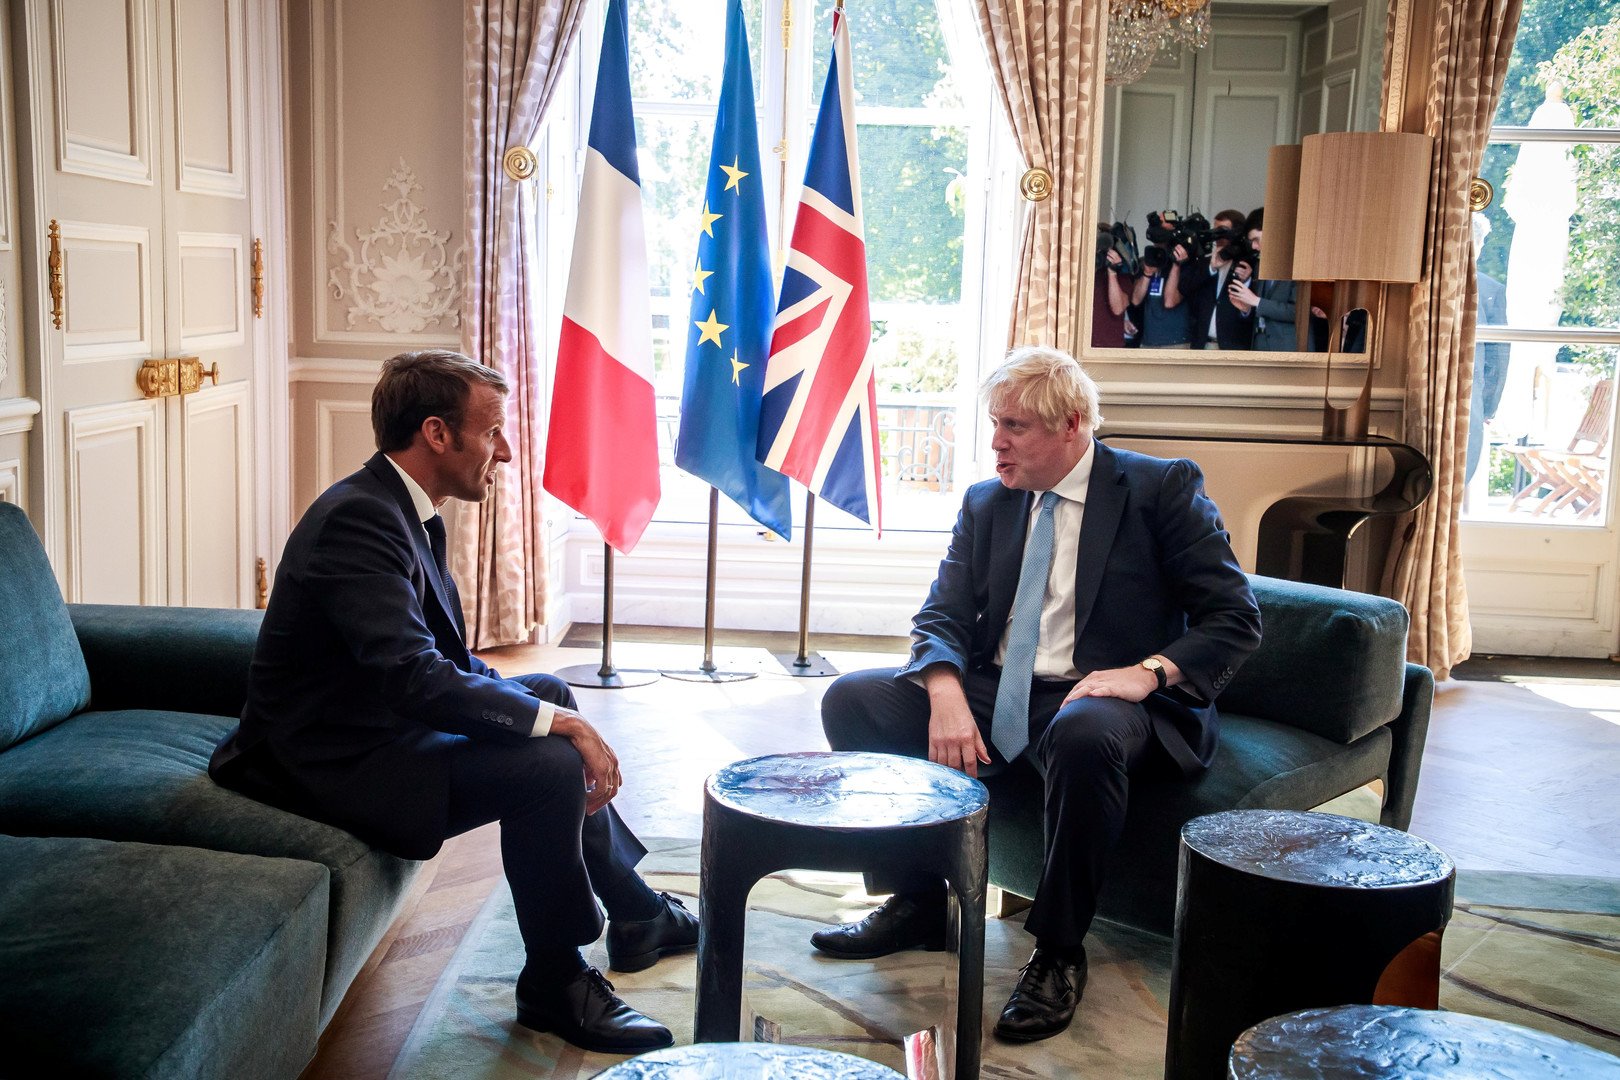 فرنسا وبريطانيا تسعيان إلى توحيد الموقف الأوروبي بشأن إيران